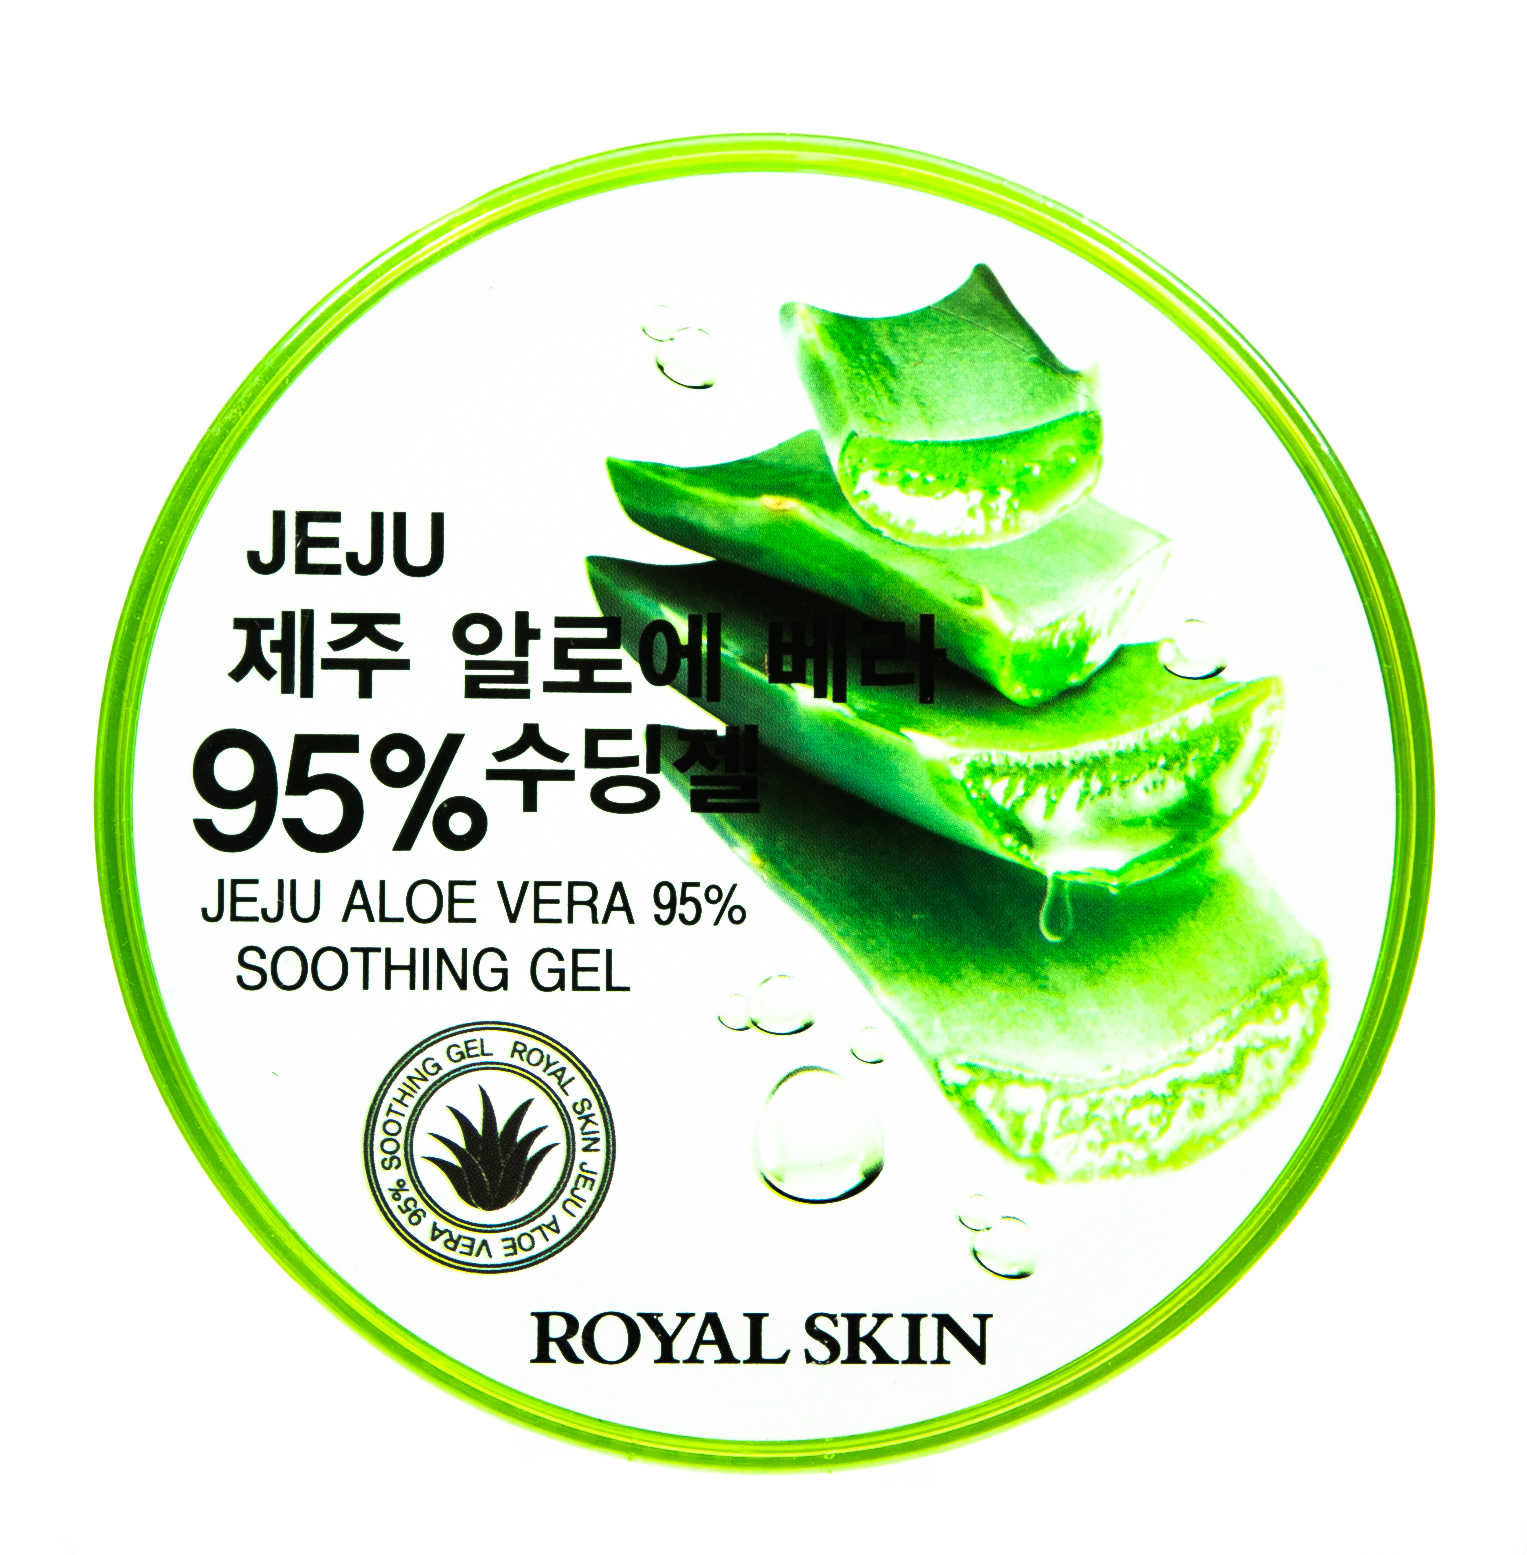 Royal Skin Многофункциональный гель для лица и тела с 95% содержанием Aloe, 300 мл (Royal Skin, Для лица)